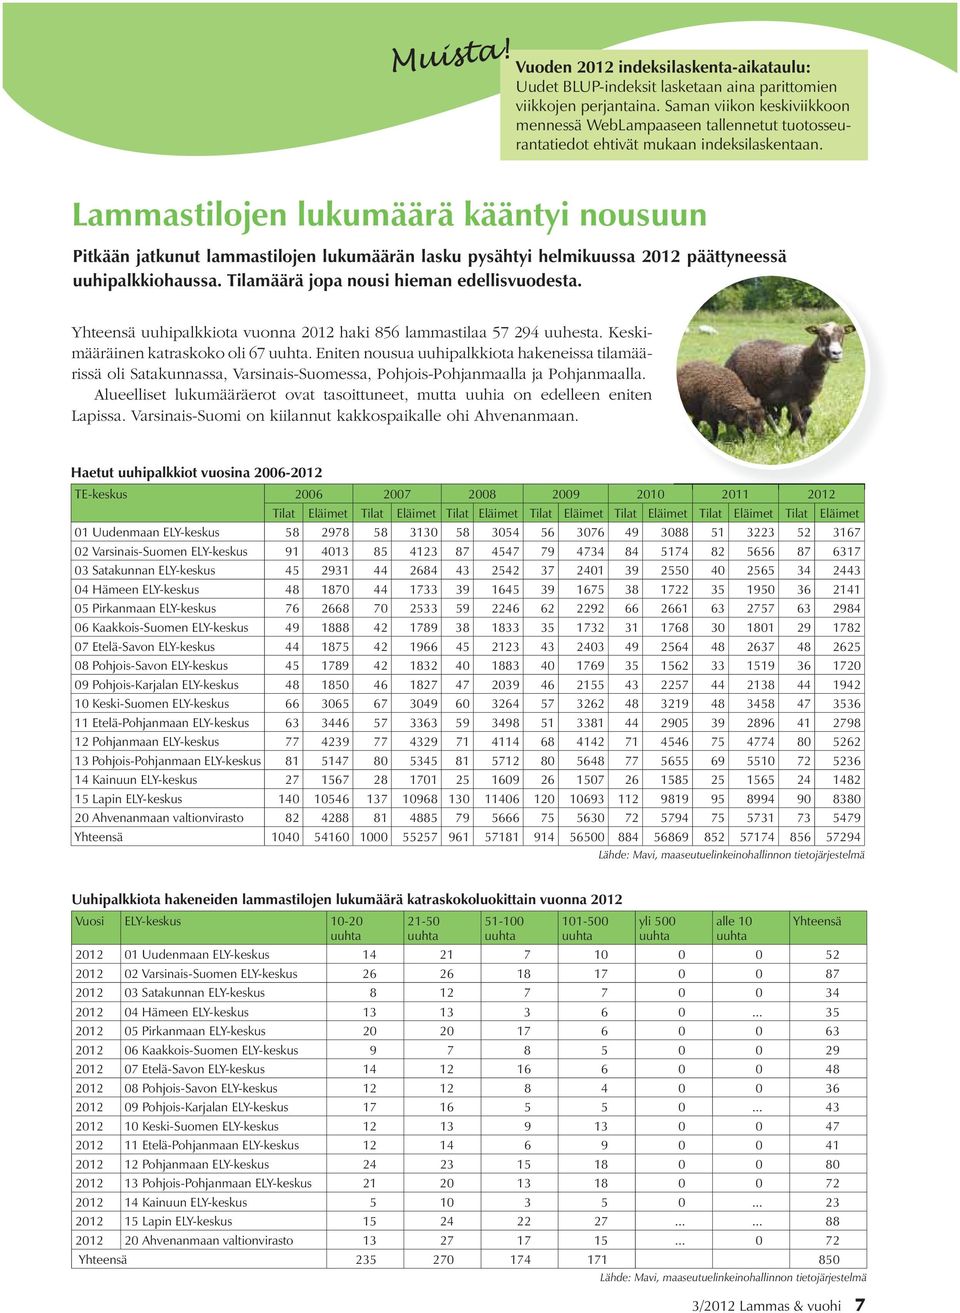 Lammastilojen lukumäärä kääntyi nousuun Pitkään jatkunut lammastilojen lukumäärän lasku pysähtyi helmikuussa 2012 päättyneessä uuhipalkkiohaussa. Tilamäärä jopa nousi hieman edellisvuodesta.